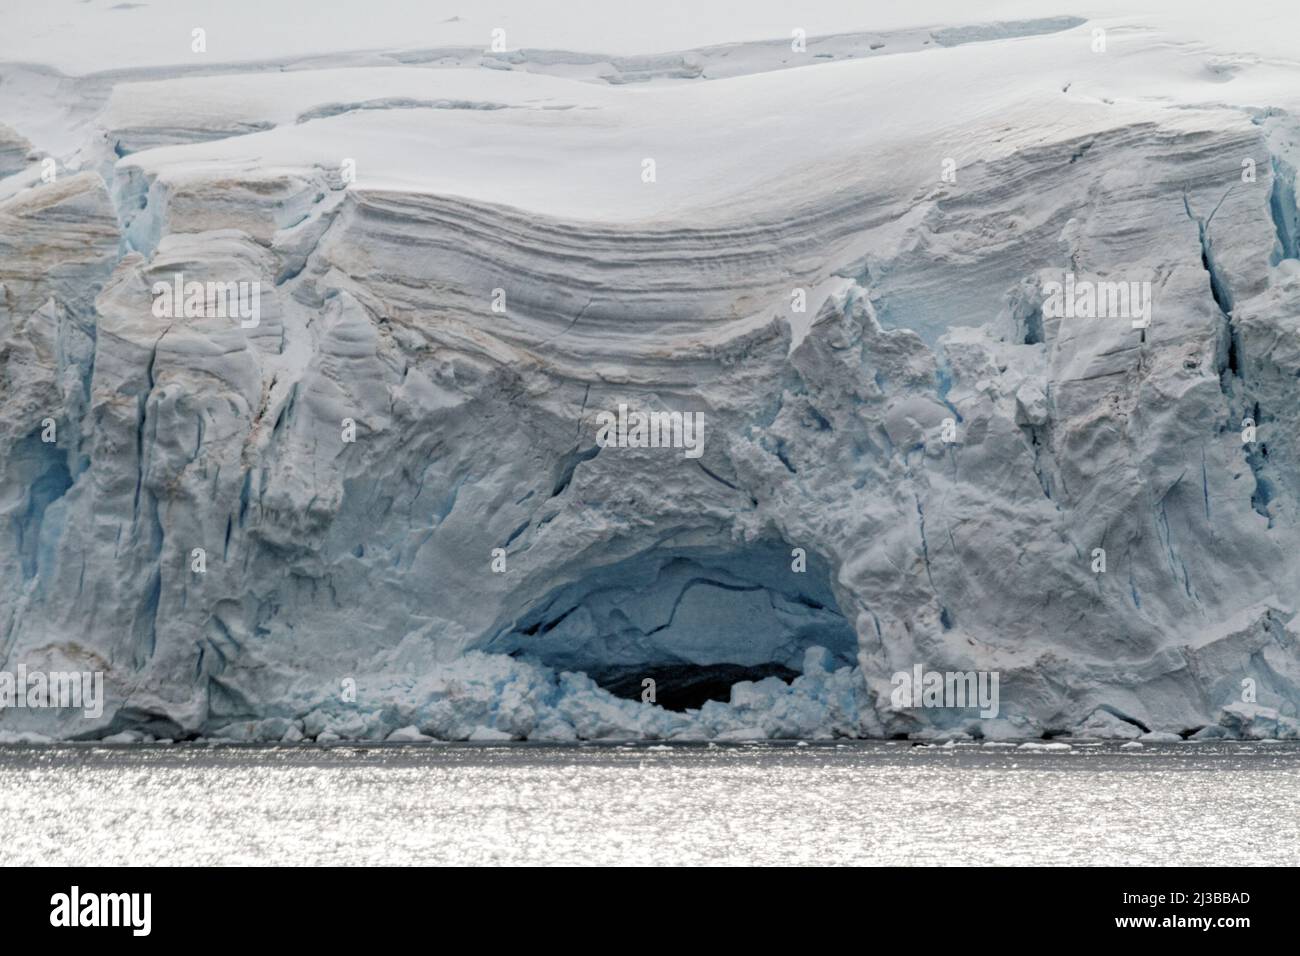 L'antarctique - Côte de l'Antarctique avec des formations de glace - Péninsule Antarctique - Archipel Palmer - Neumayer Channel - Réchauffement climatique Banque D'Images